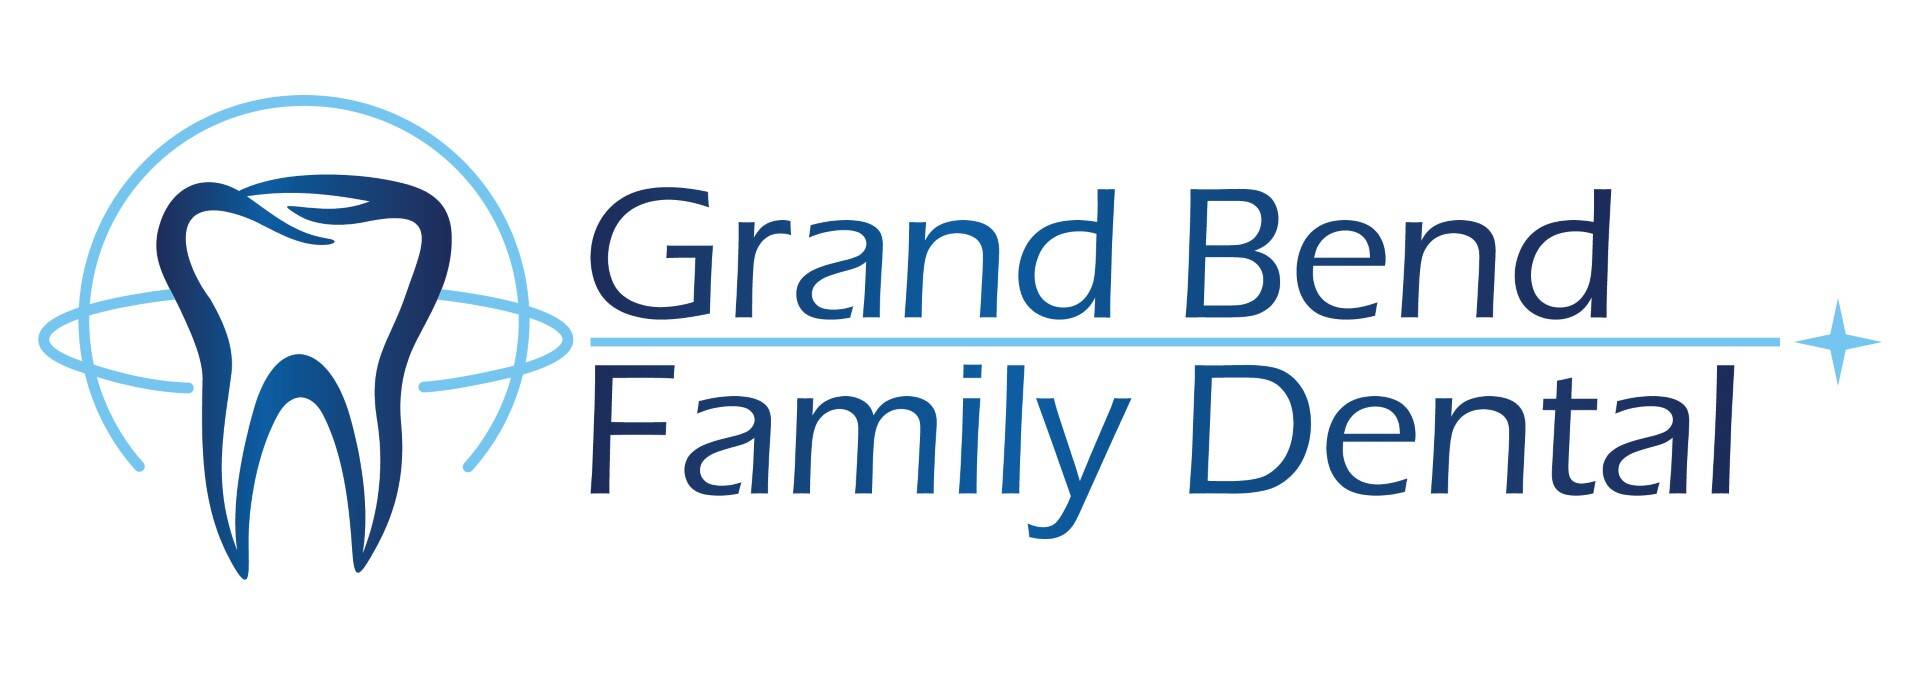 Grand Bend Family Dental